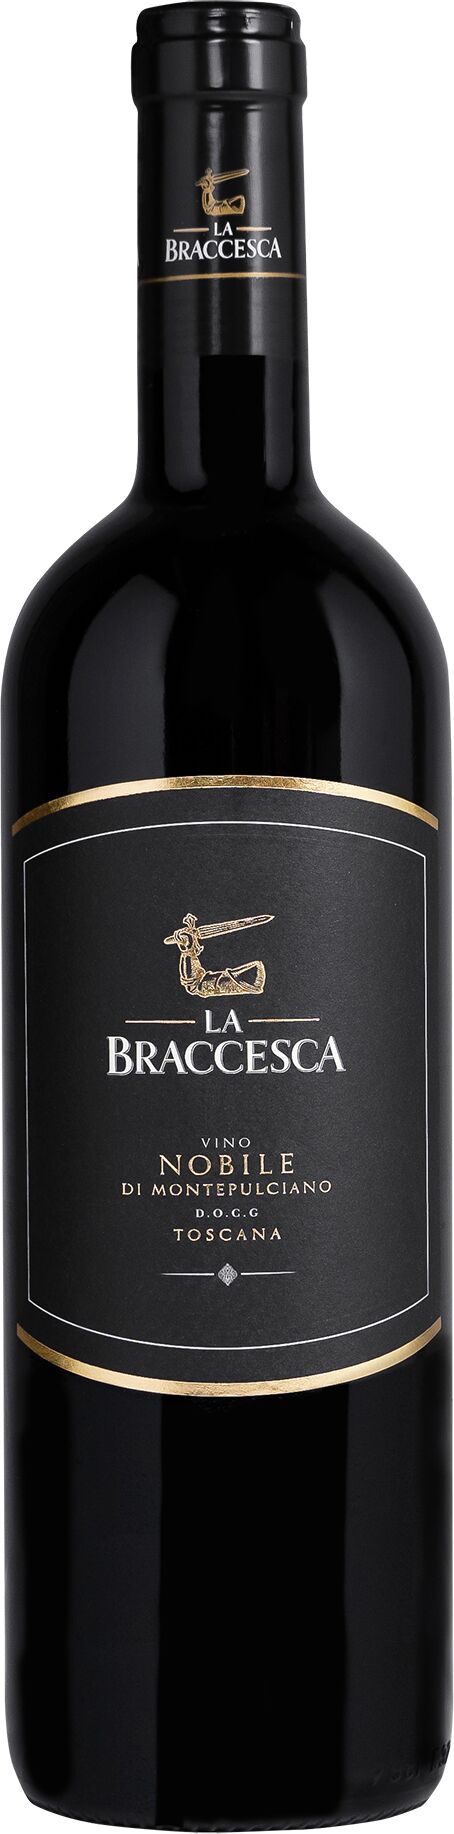 La Braccesca Vino Nobile - 2019 DOCG di Montepulciano 0.75 l